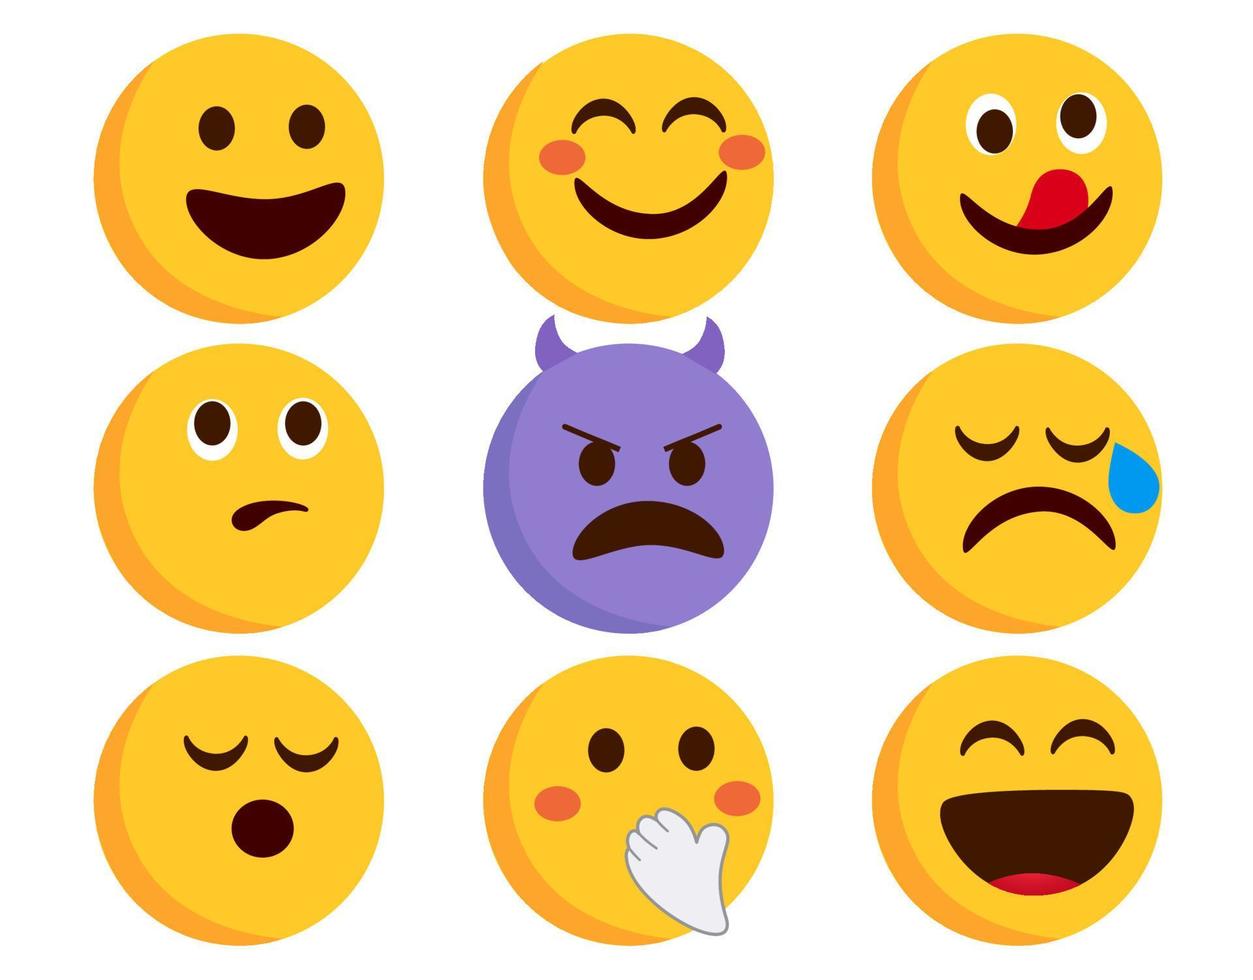 Emoji Emoticons Zeichensatz Vektor. Emoticon flache Emojis mit lächelnden, teuflischen und weinenden Charakteren einzeln auf weißem Hintergrund für die Sammlung des Gesichtsausdrucks. Vektor-Illustration. vektor